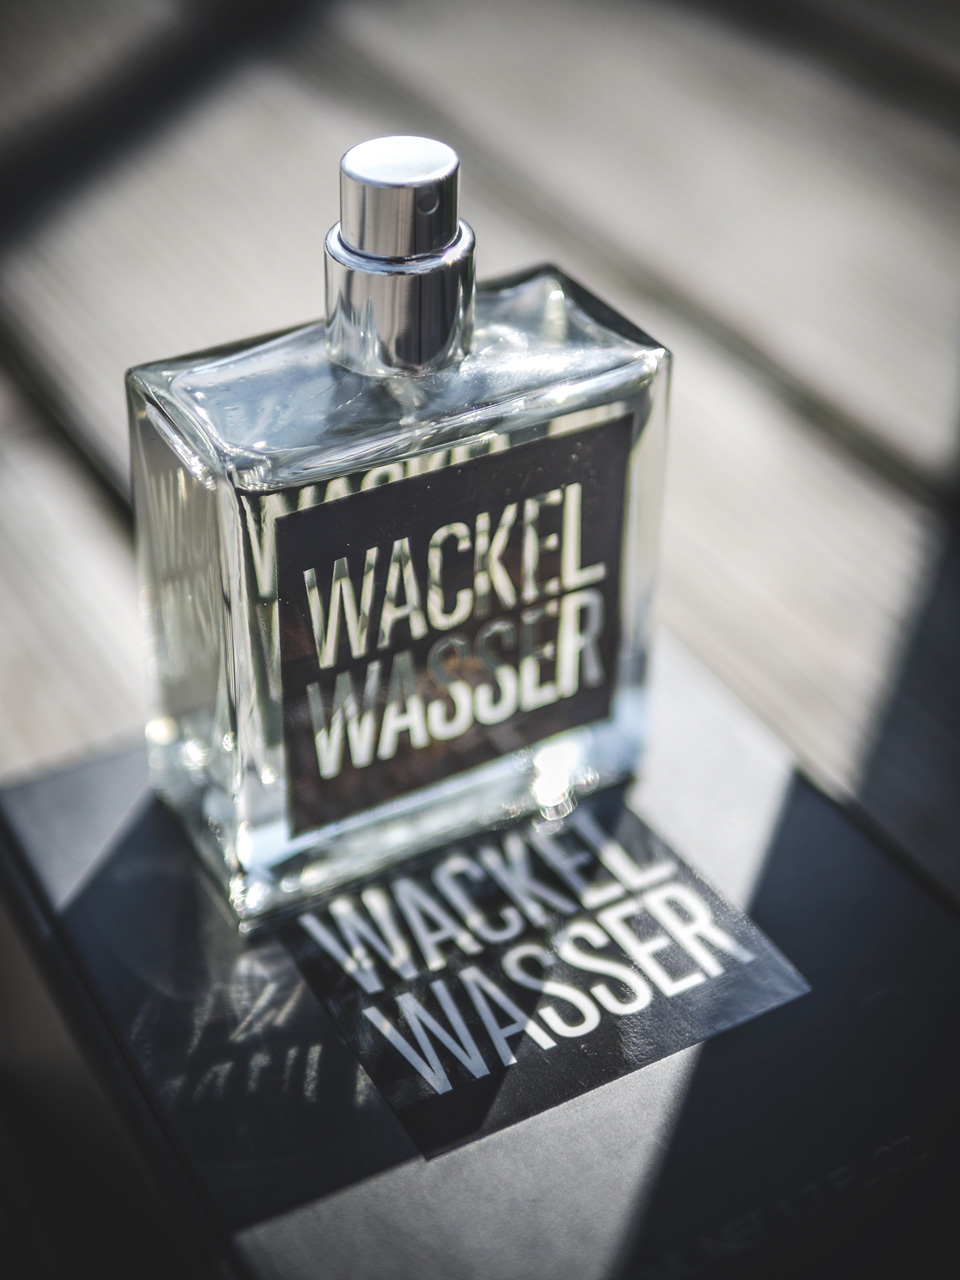 Unisex-Düfte Wackelwasser, Produktreview der Wackelwasser Düfte, Wackelswasser Light, Wackelwasser Dark, Parfüm, Wackelwasser im Test,